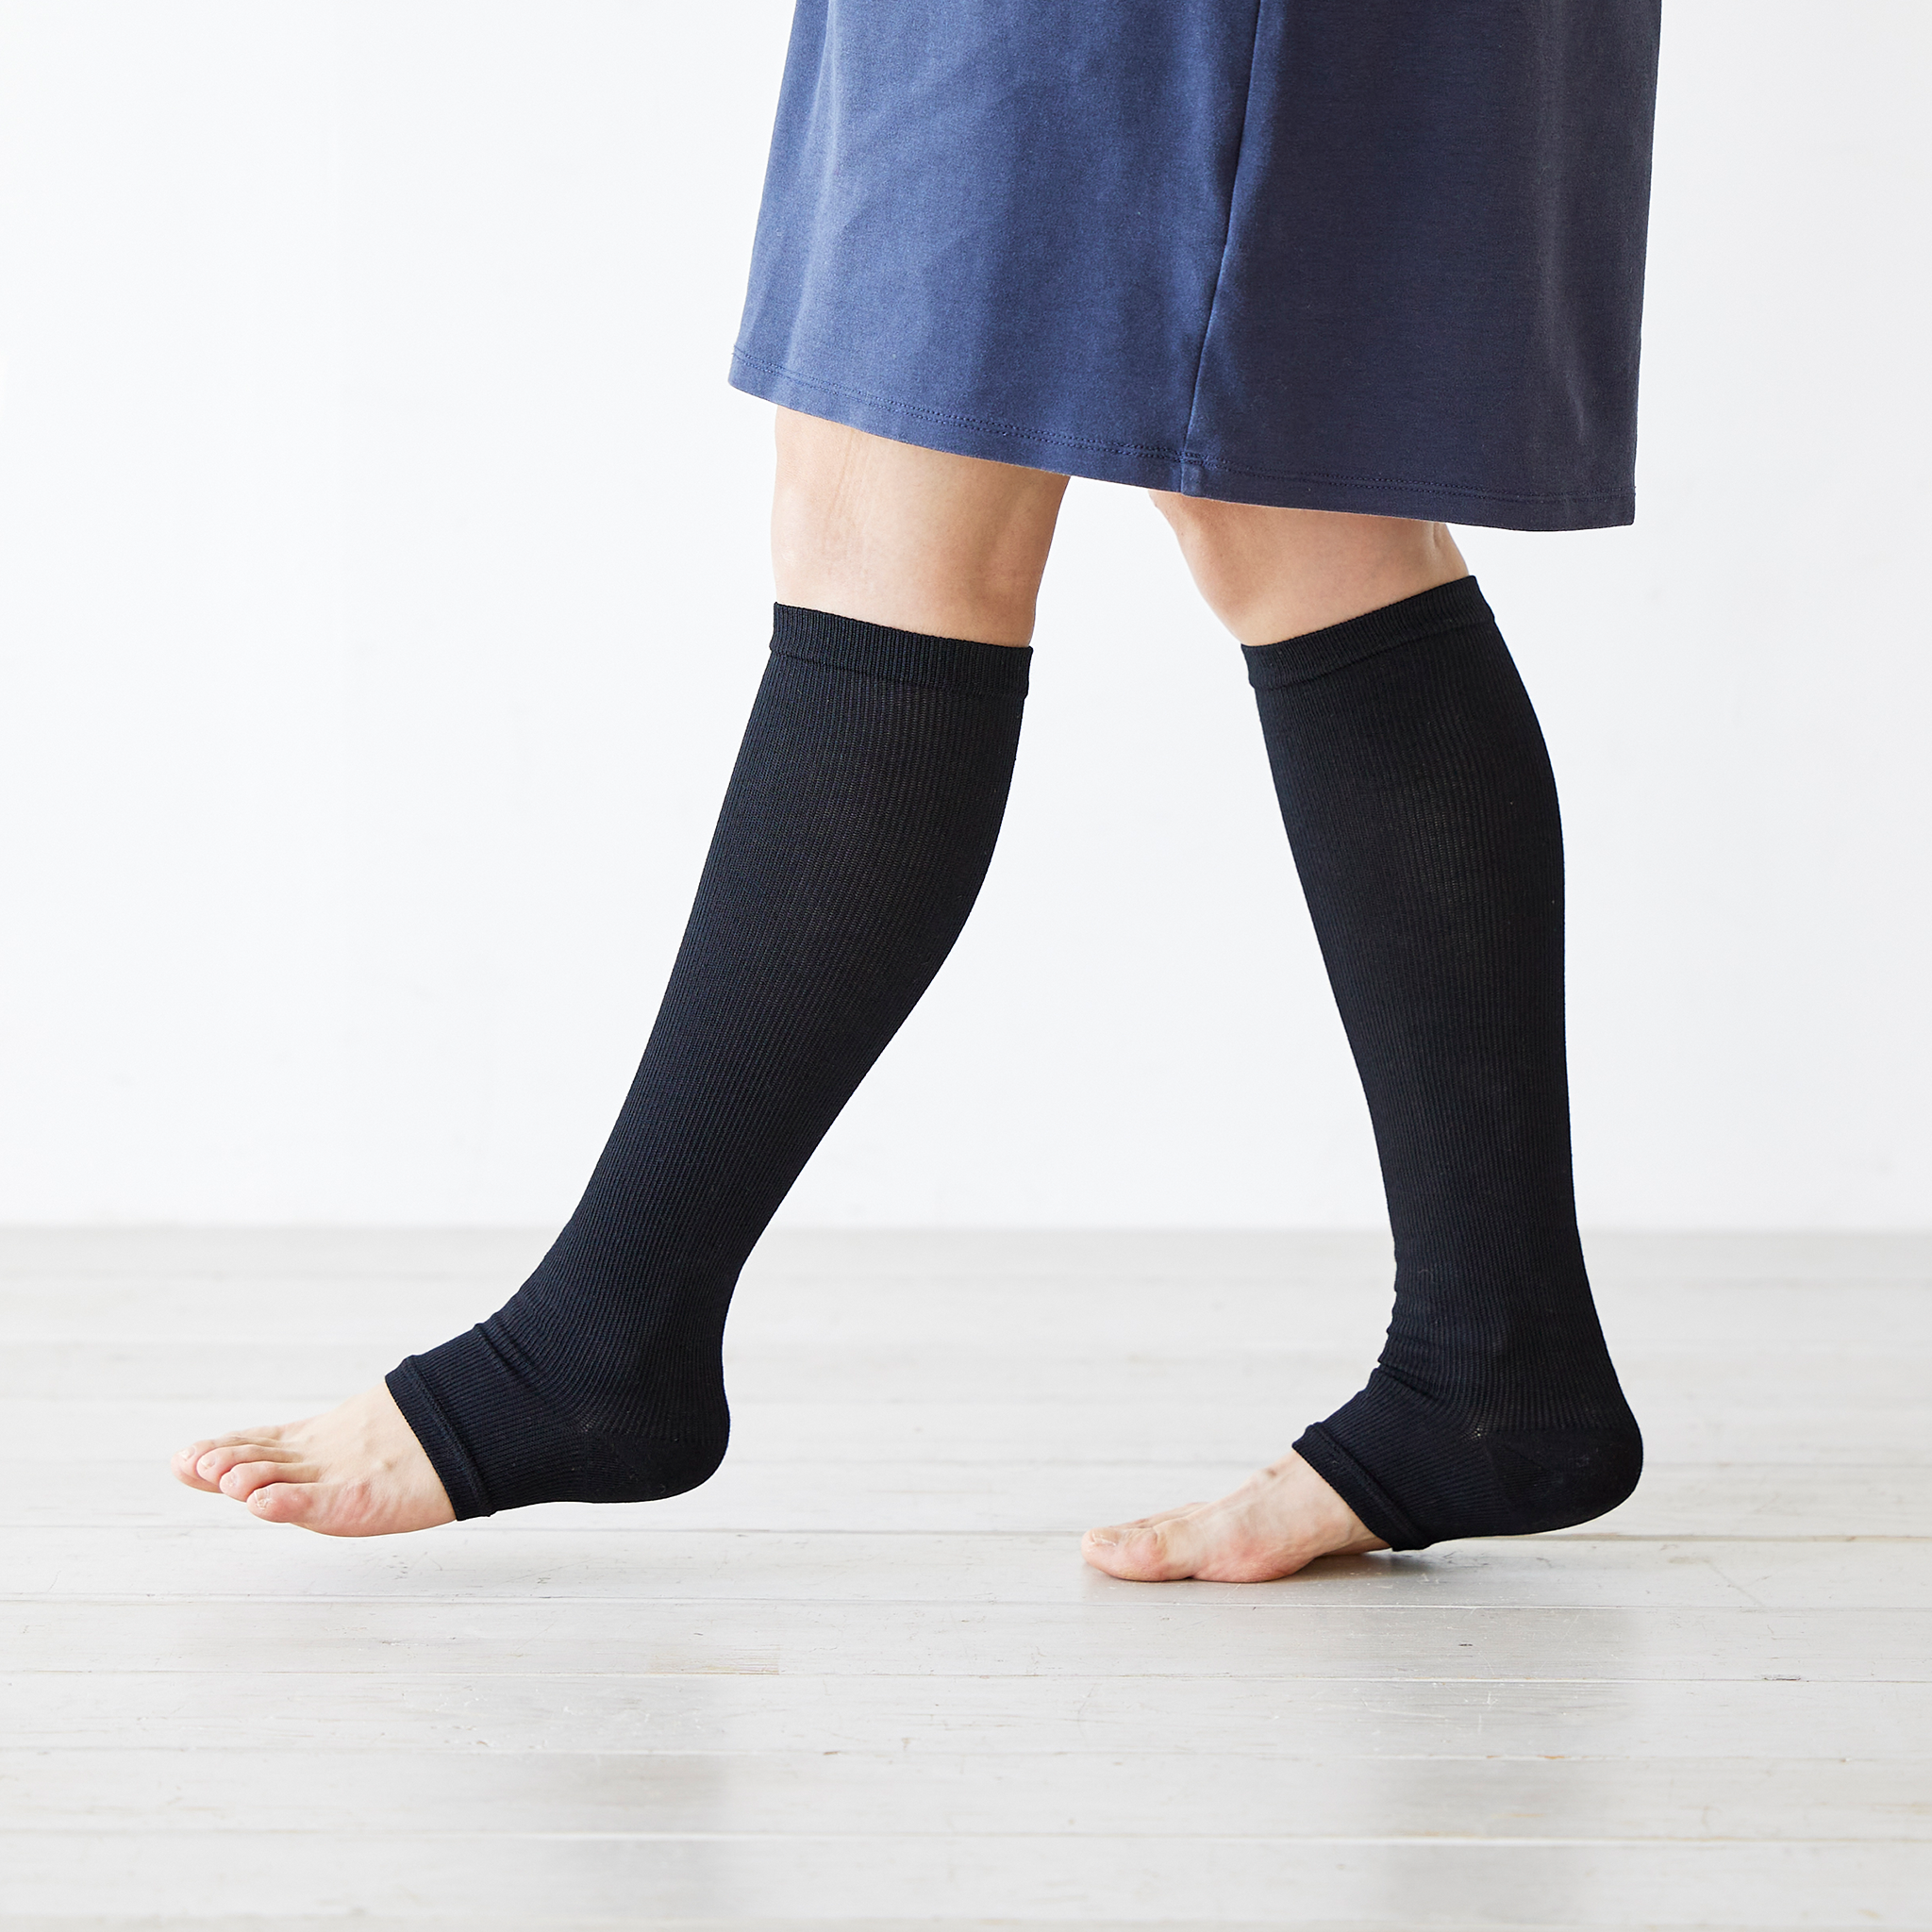 Bikyaku 壓力襪 - 露趾型 - N102